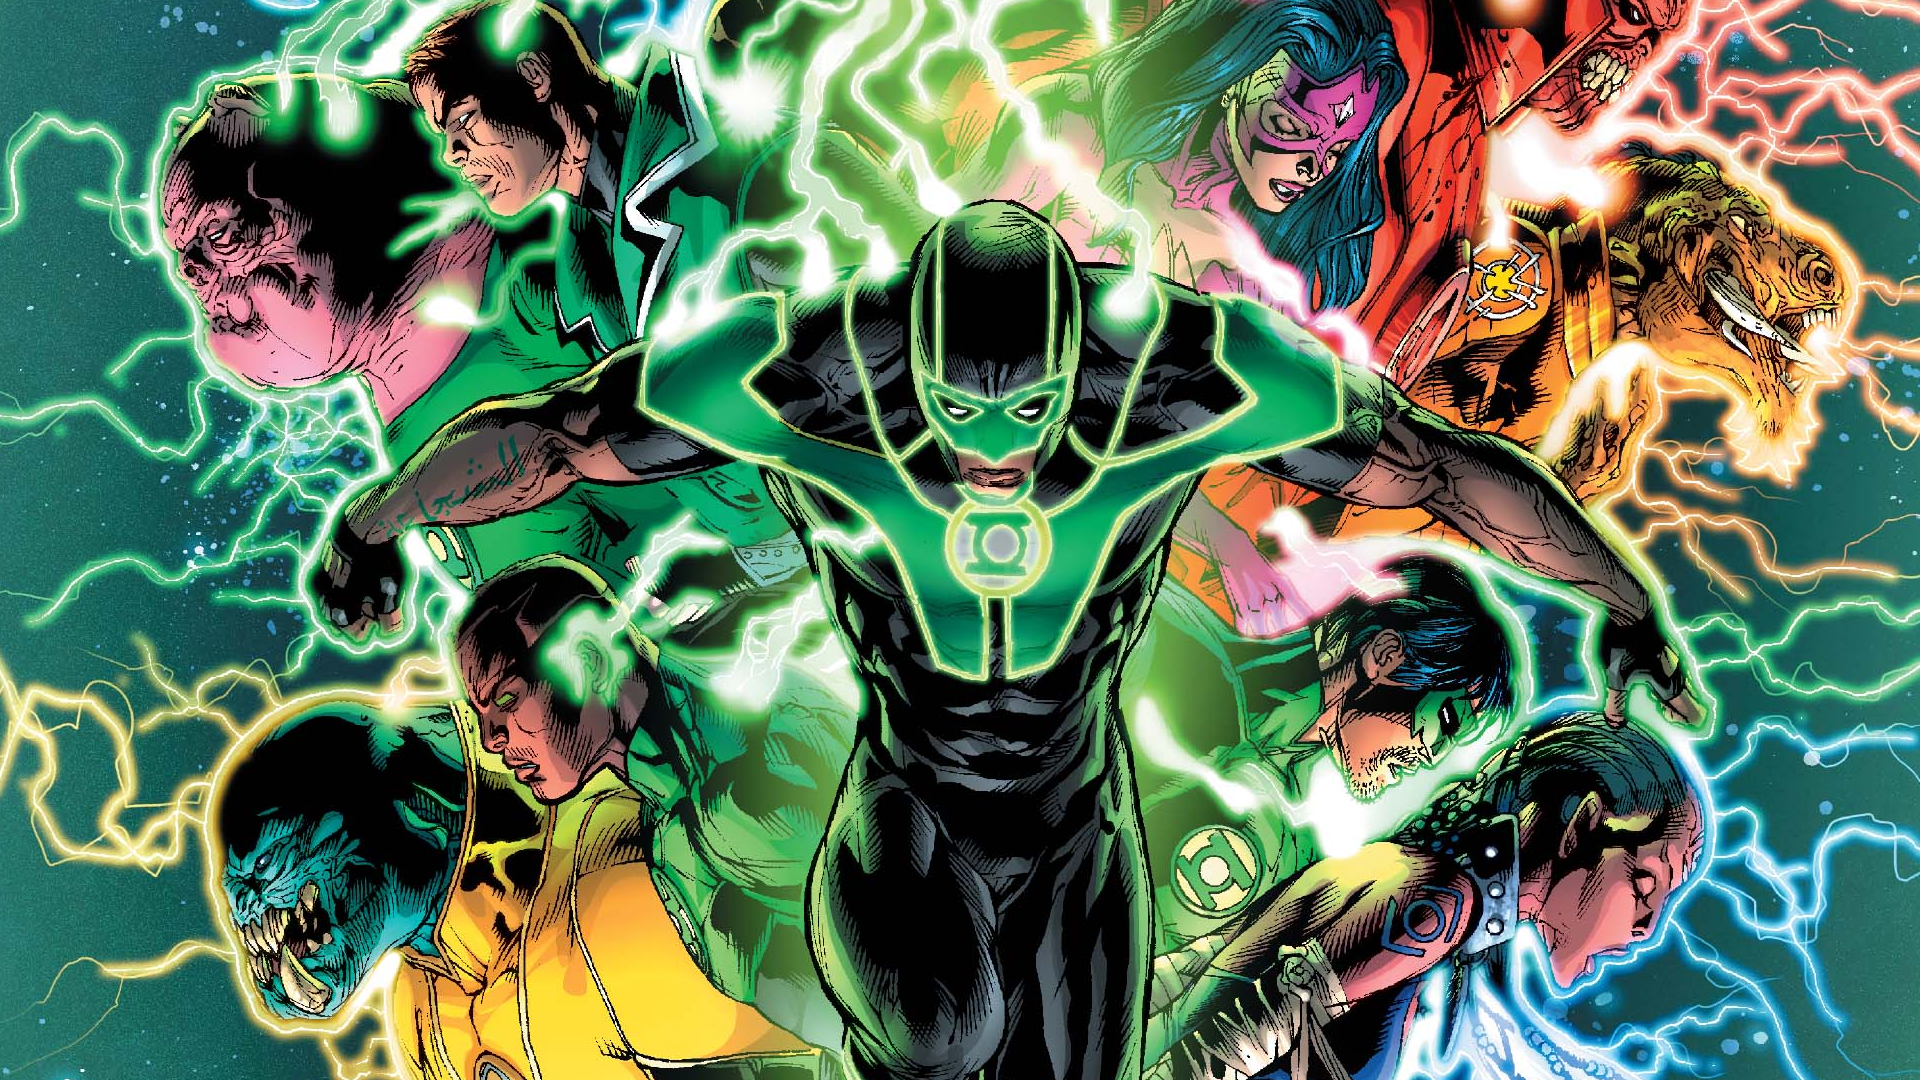 grüne laternentapete,grüne laterne,erfundener charakter,comics,fiktion,superheld